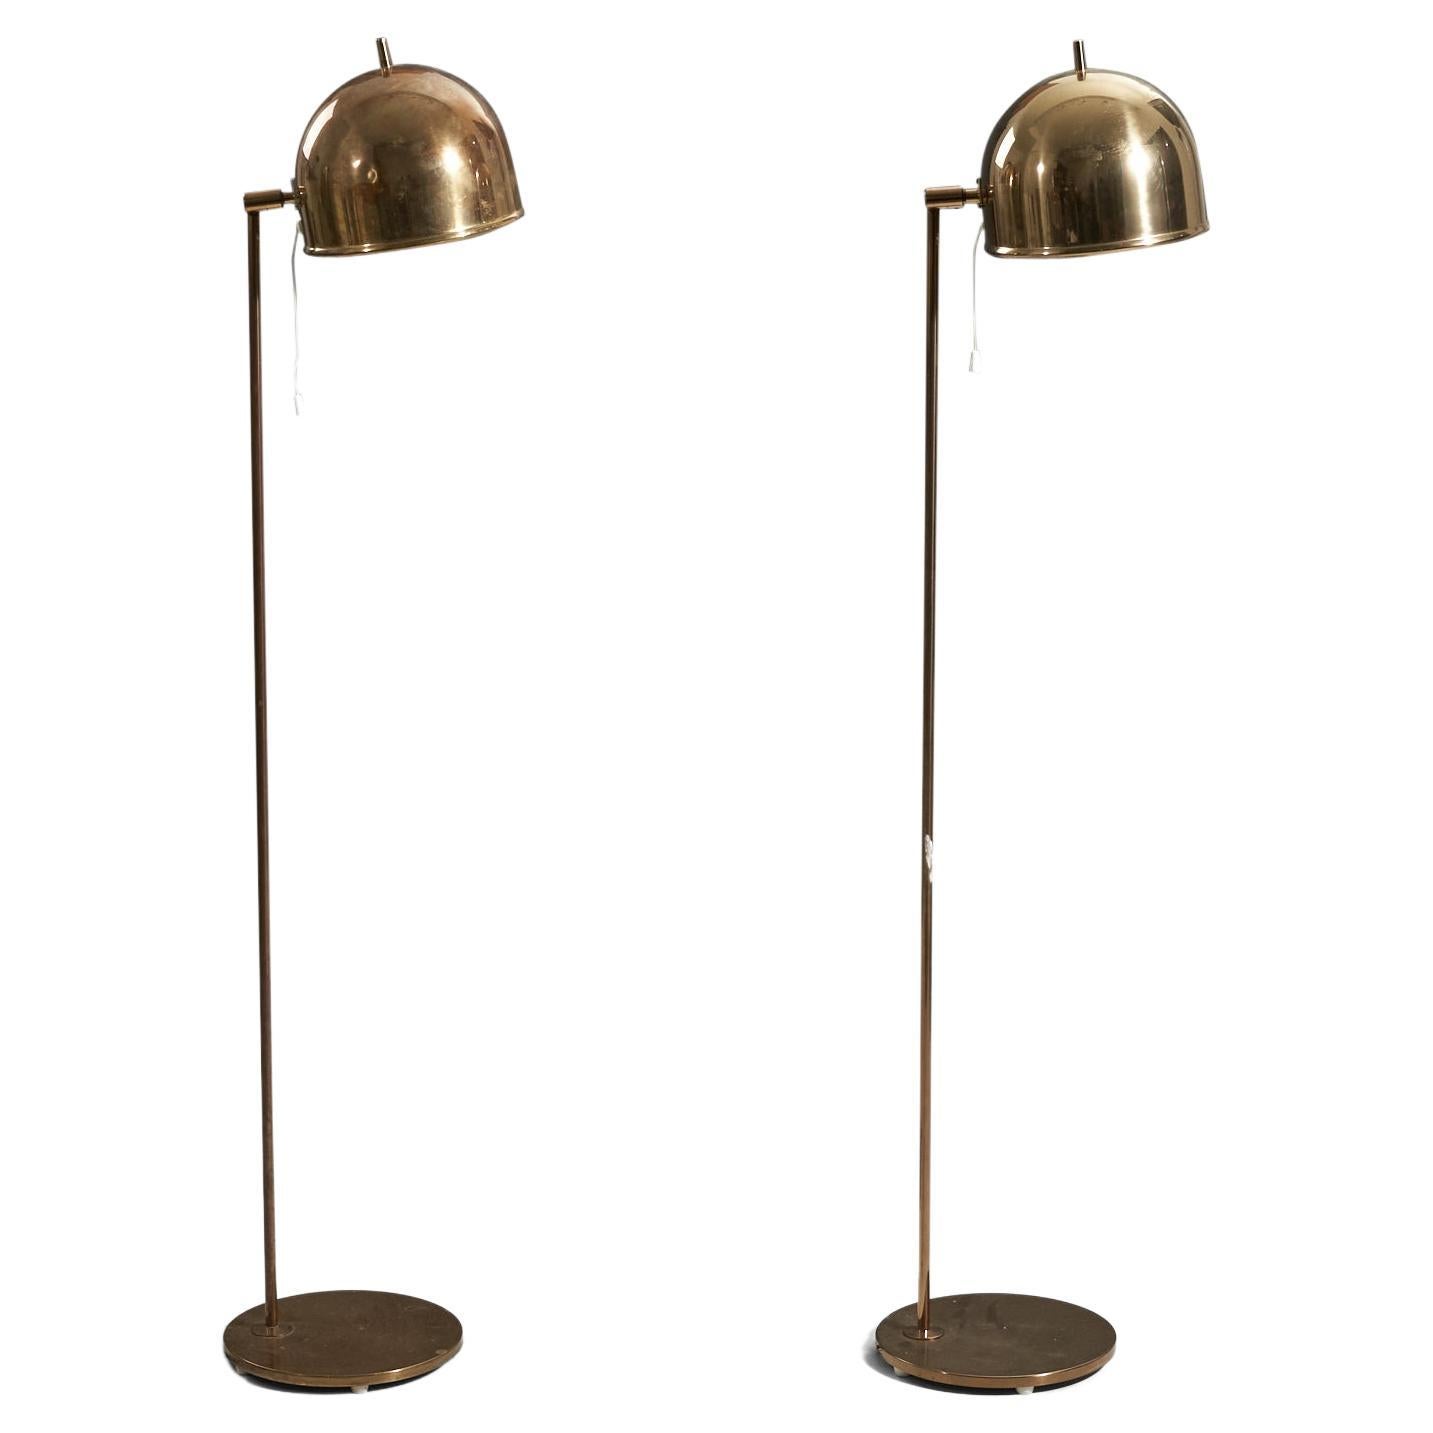 Eje Ahlgren, Adjustable Floor Lamps, Brass, Bergboms, Sweden, 1960s